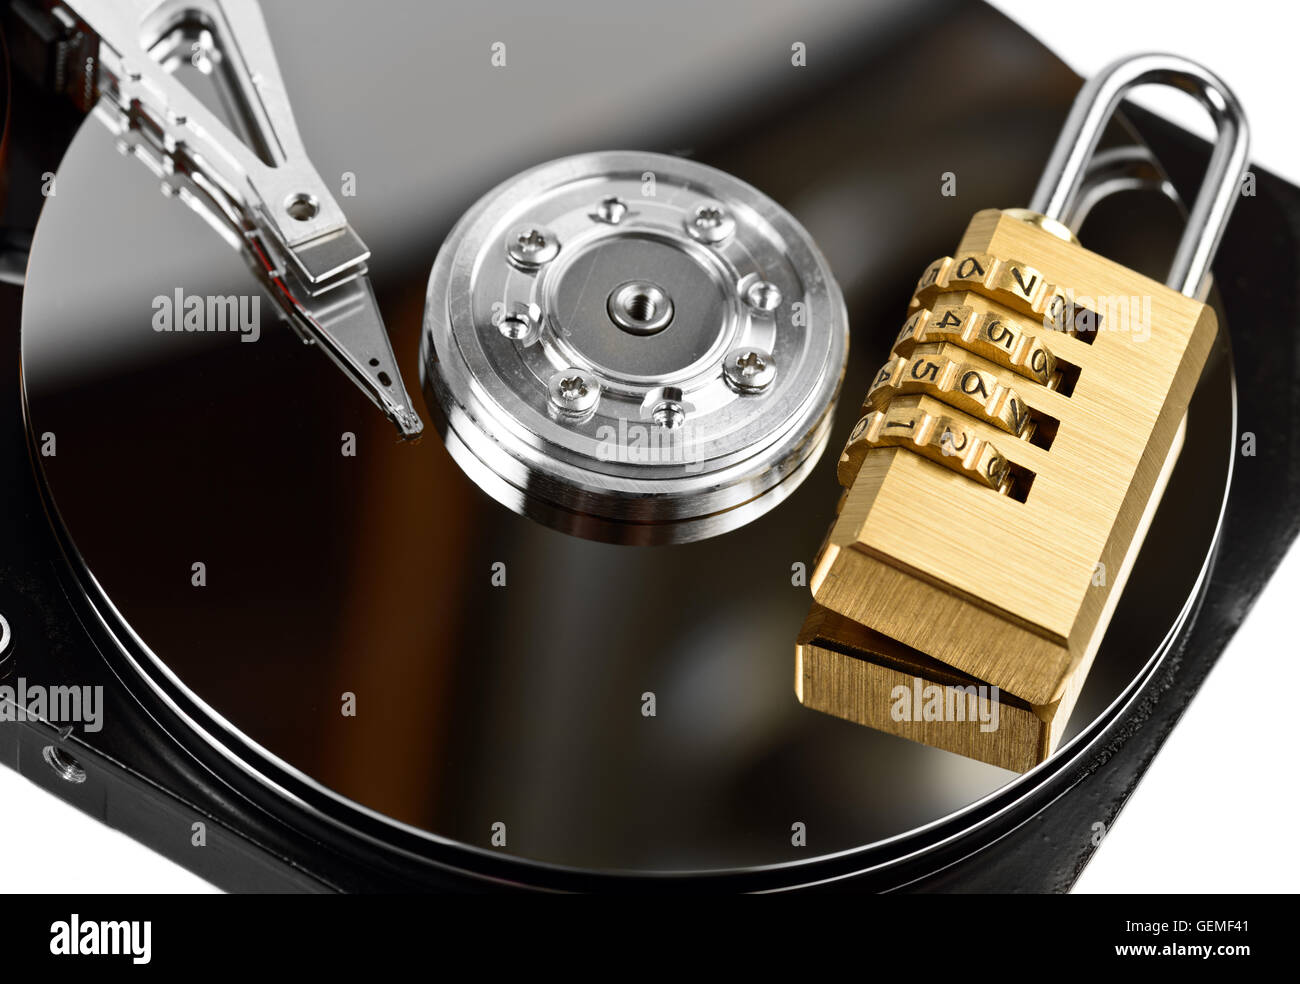 La protection des données sur disque dur avec verrou à White Banque D'Images